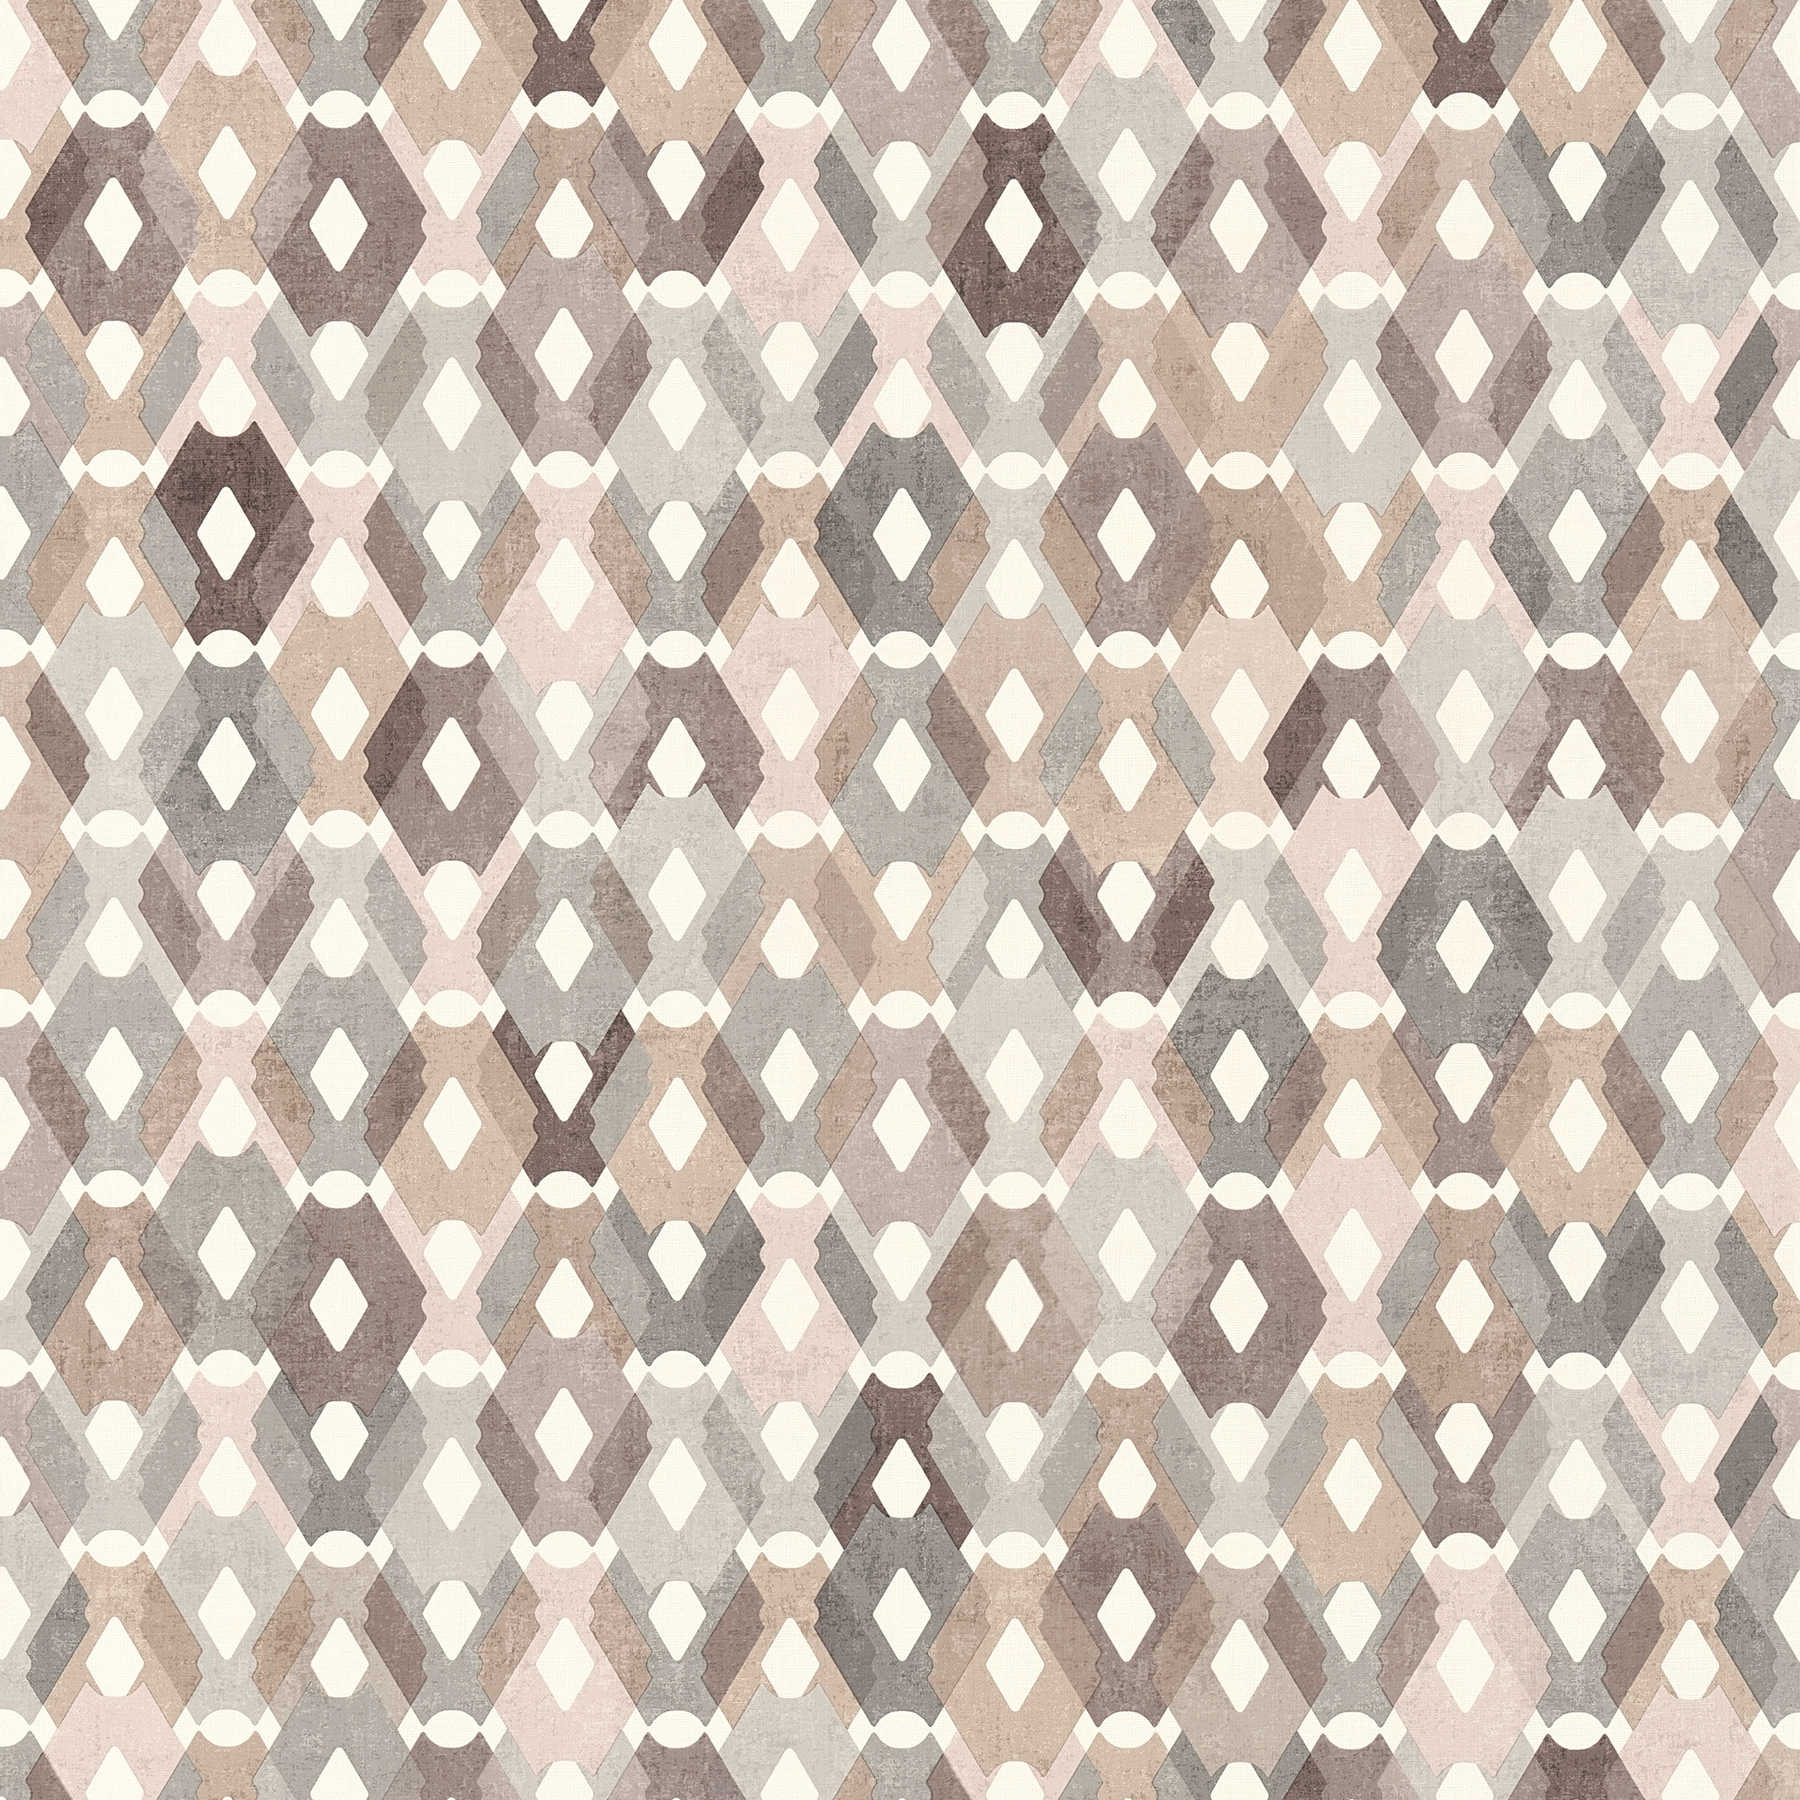 Pattern wallpaper diamonds in vintage look - beige, brown
